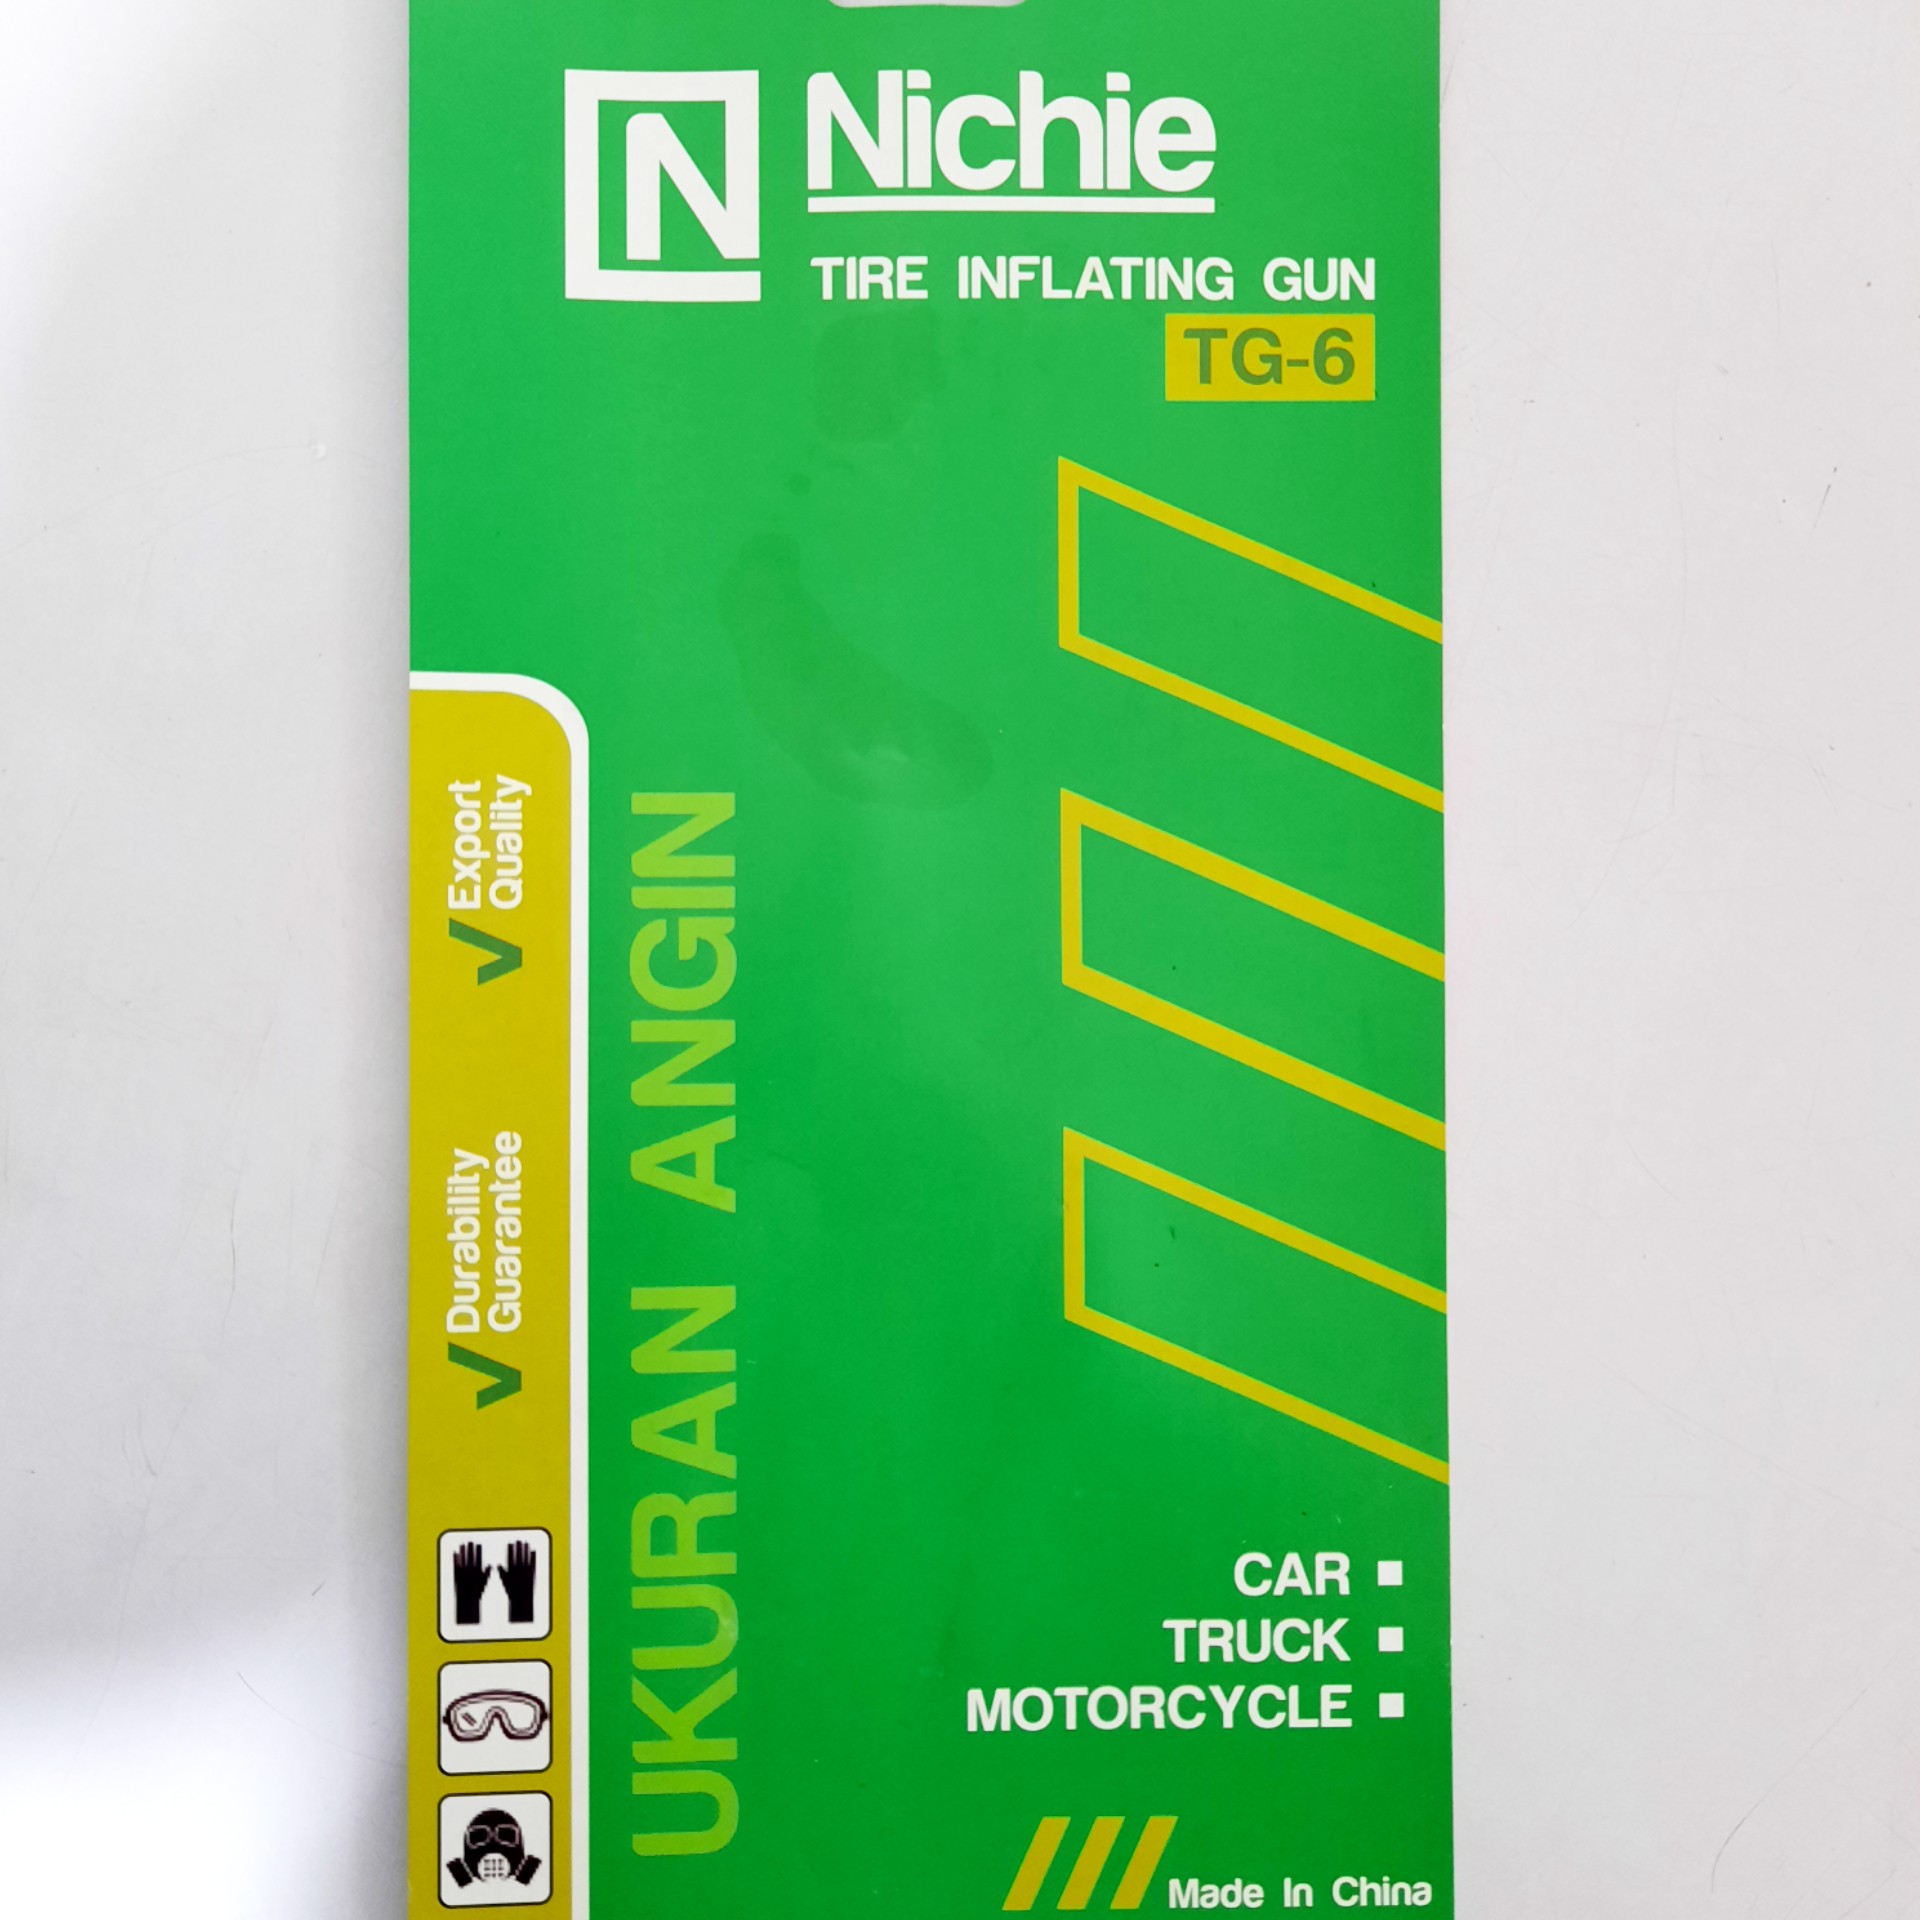 Tire Inflating Gun Nichie TG-6 5